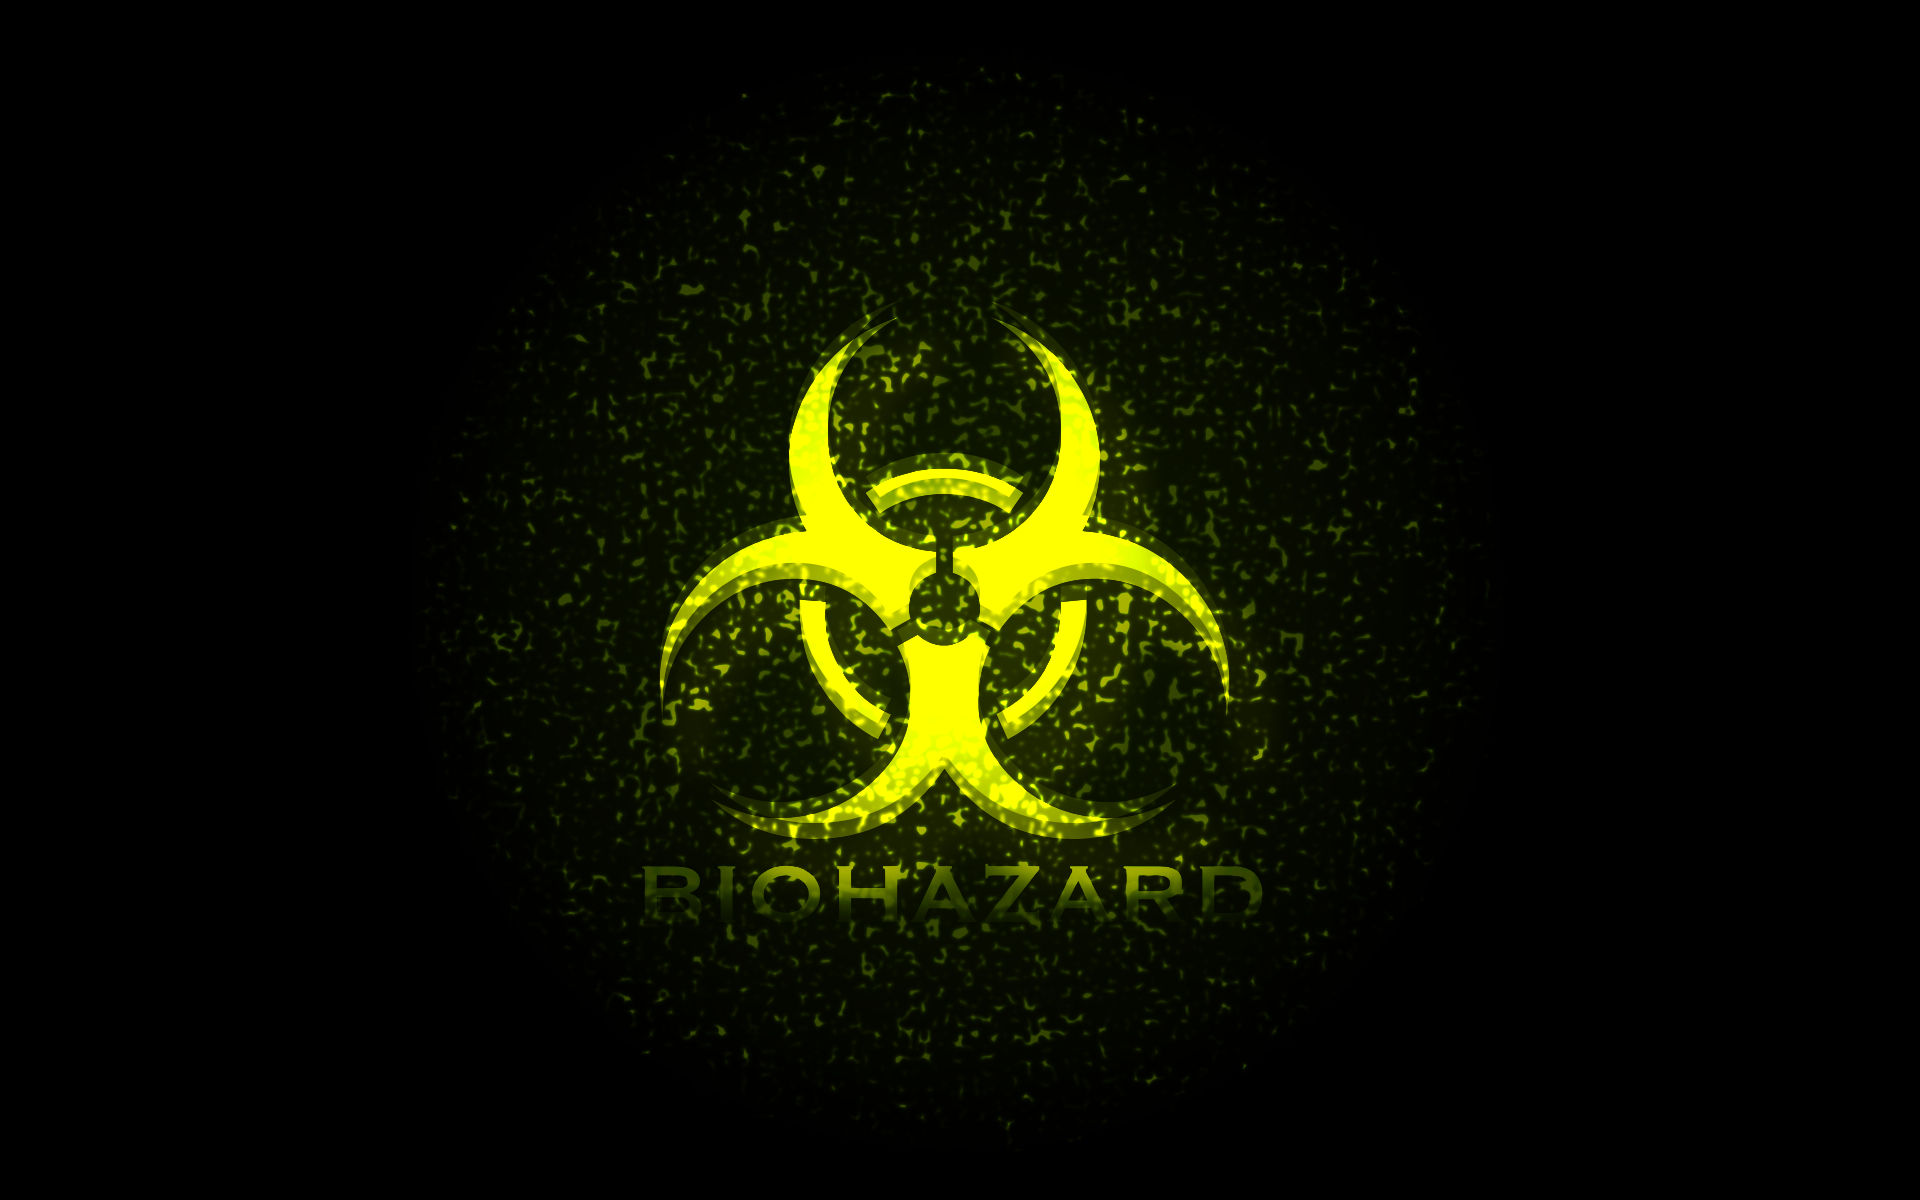 Biohazard background